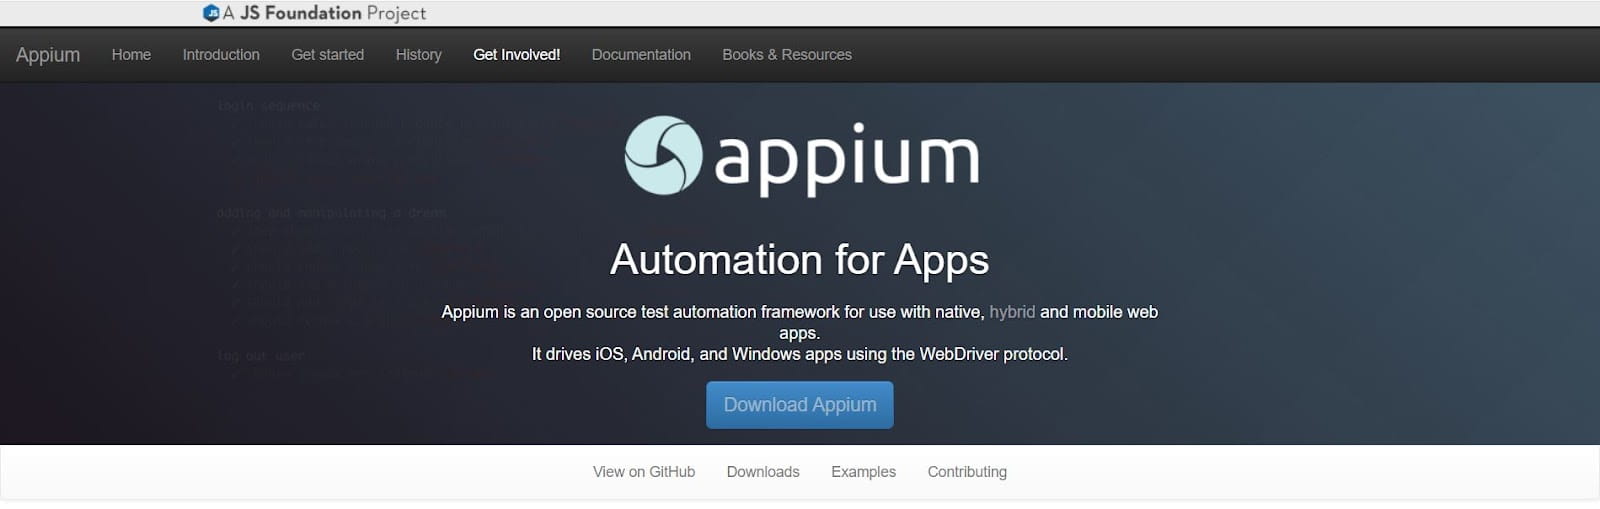 appium tutorial for beginners ios